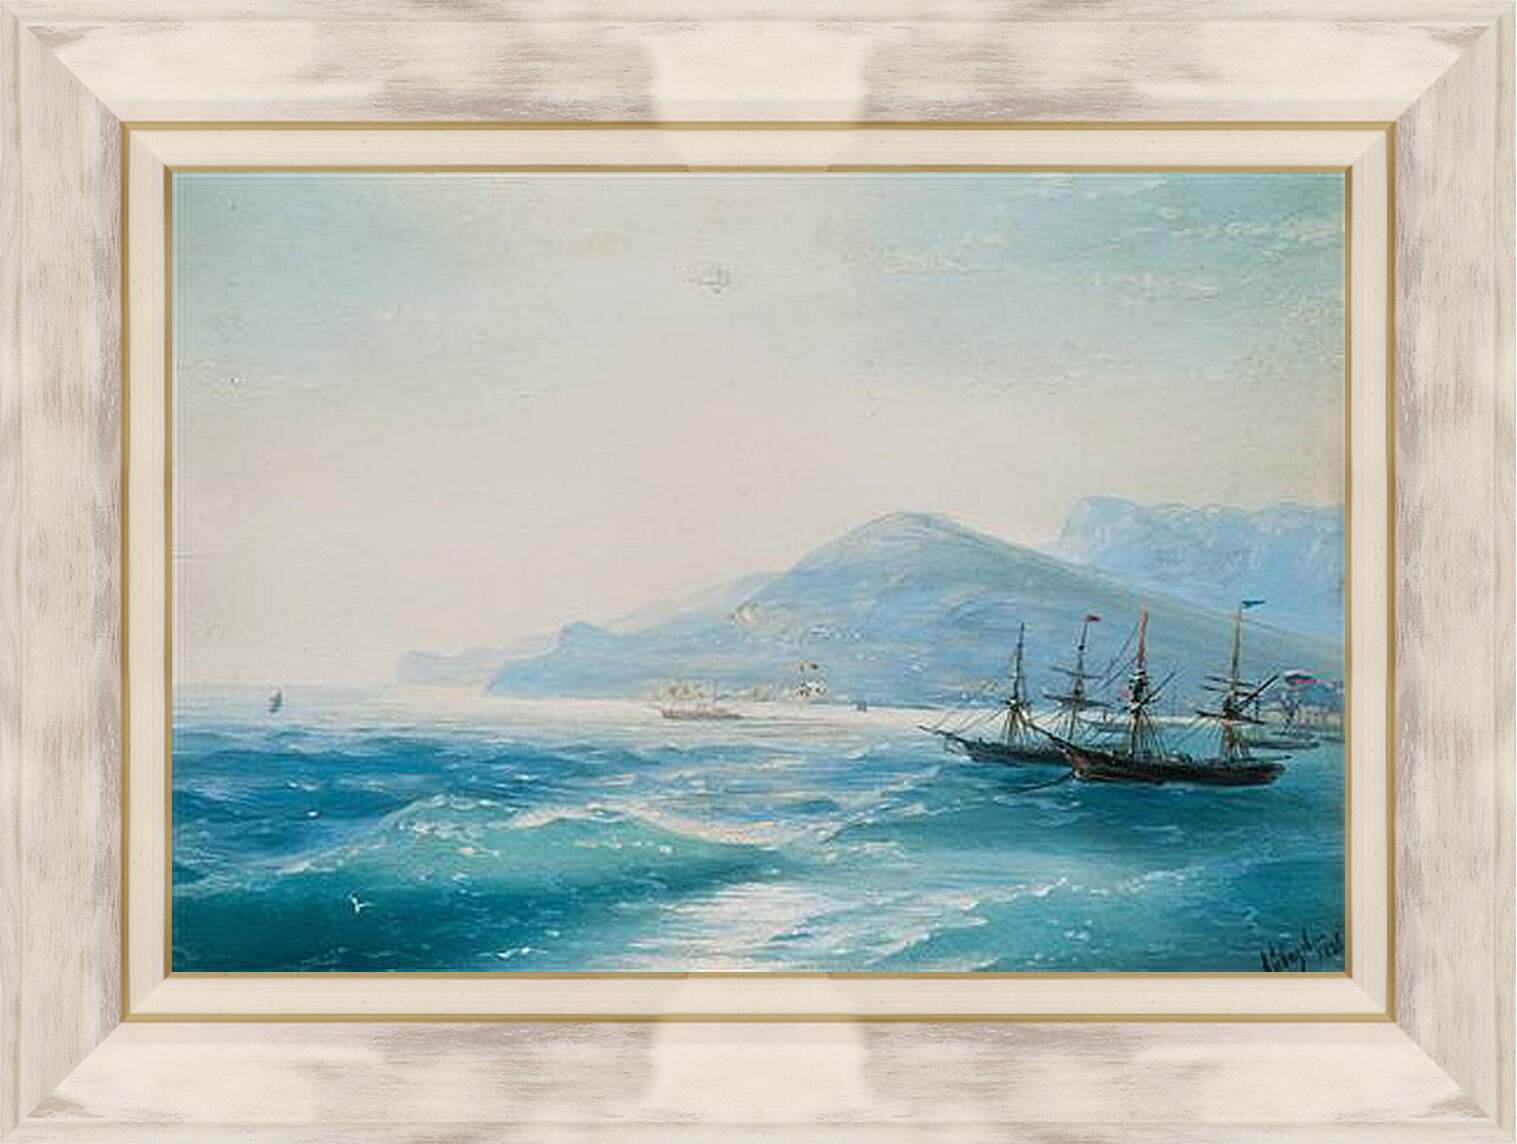 Картина в раме - Корабли недалеко от побережья 1886. Иван Айвазовский
